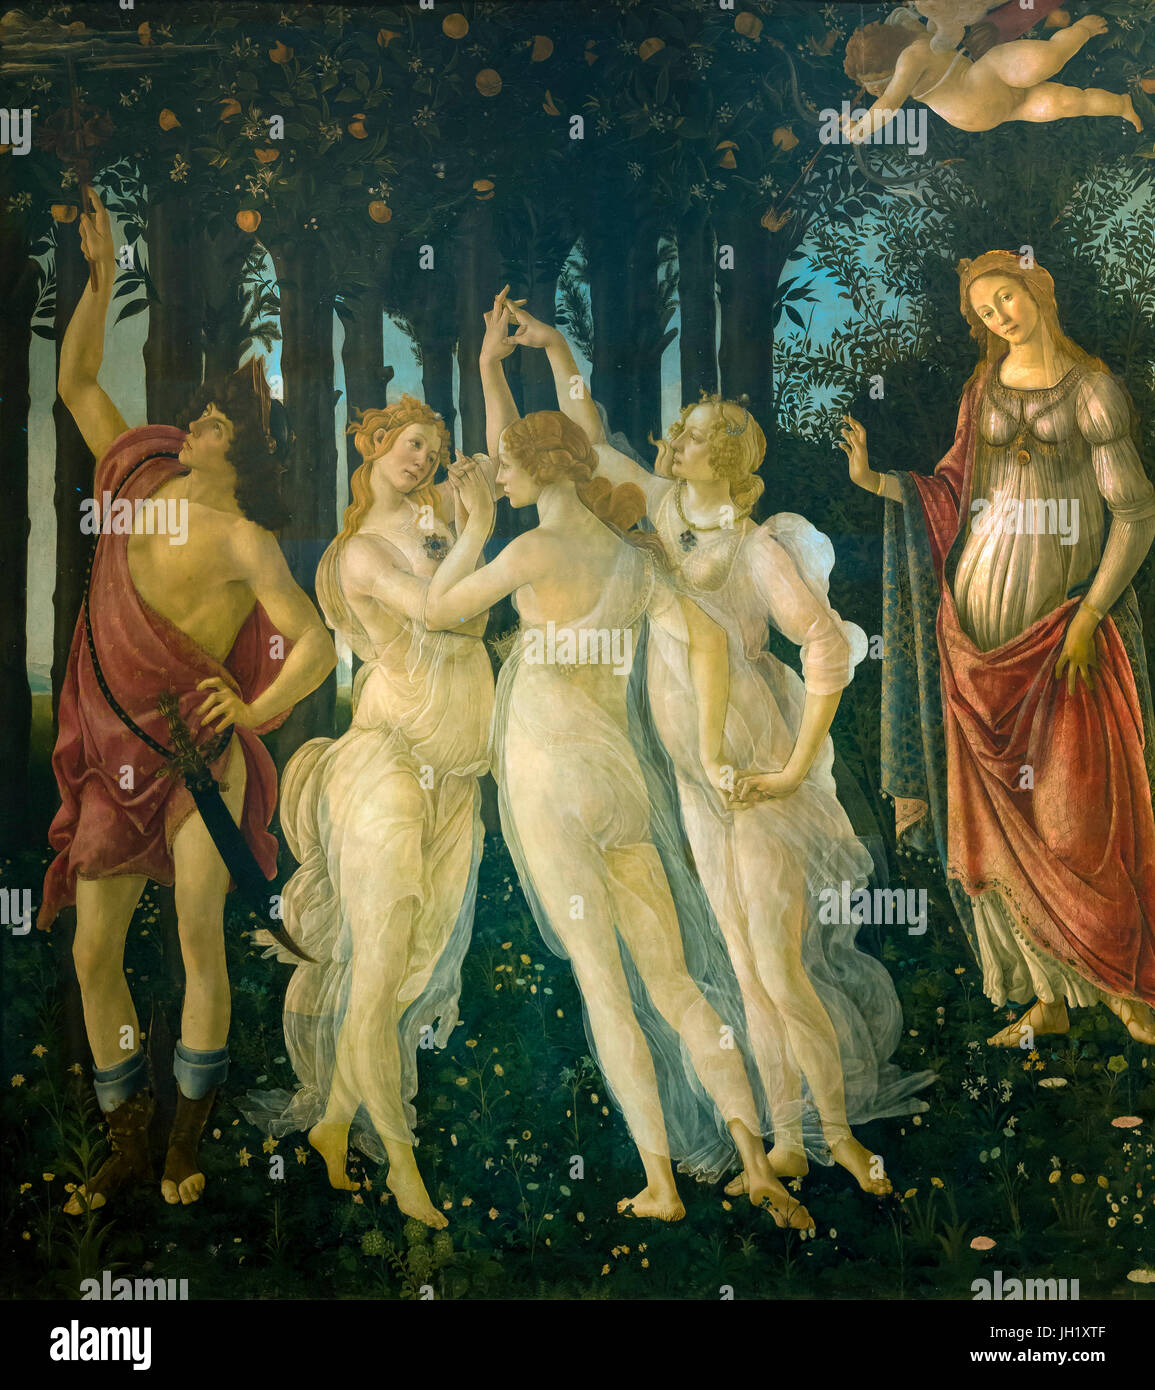 Tres Gracias, detalle de Primavera, alegoría de la primavera, témpera, pintura panel de Sandro Botticelli, circa1482, la Galería de los Uffizi, Florencia, Toscana, Foto de stock